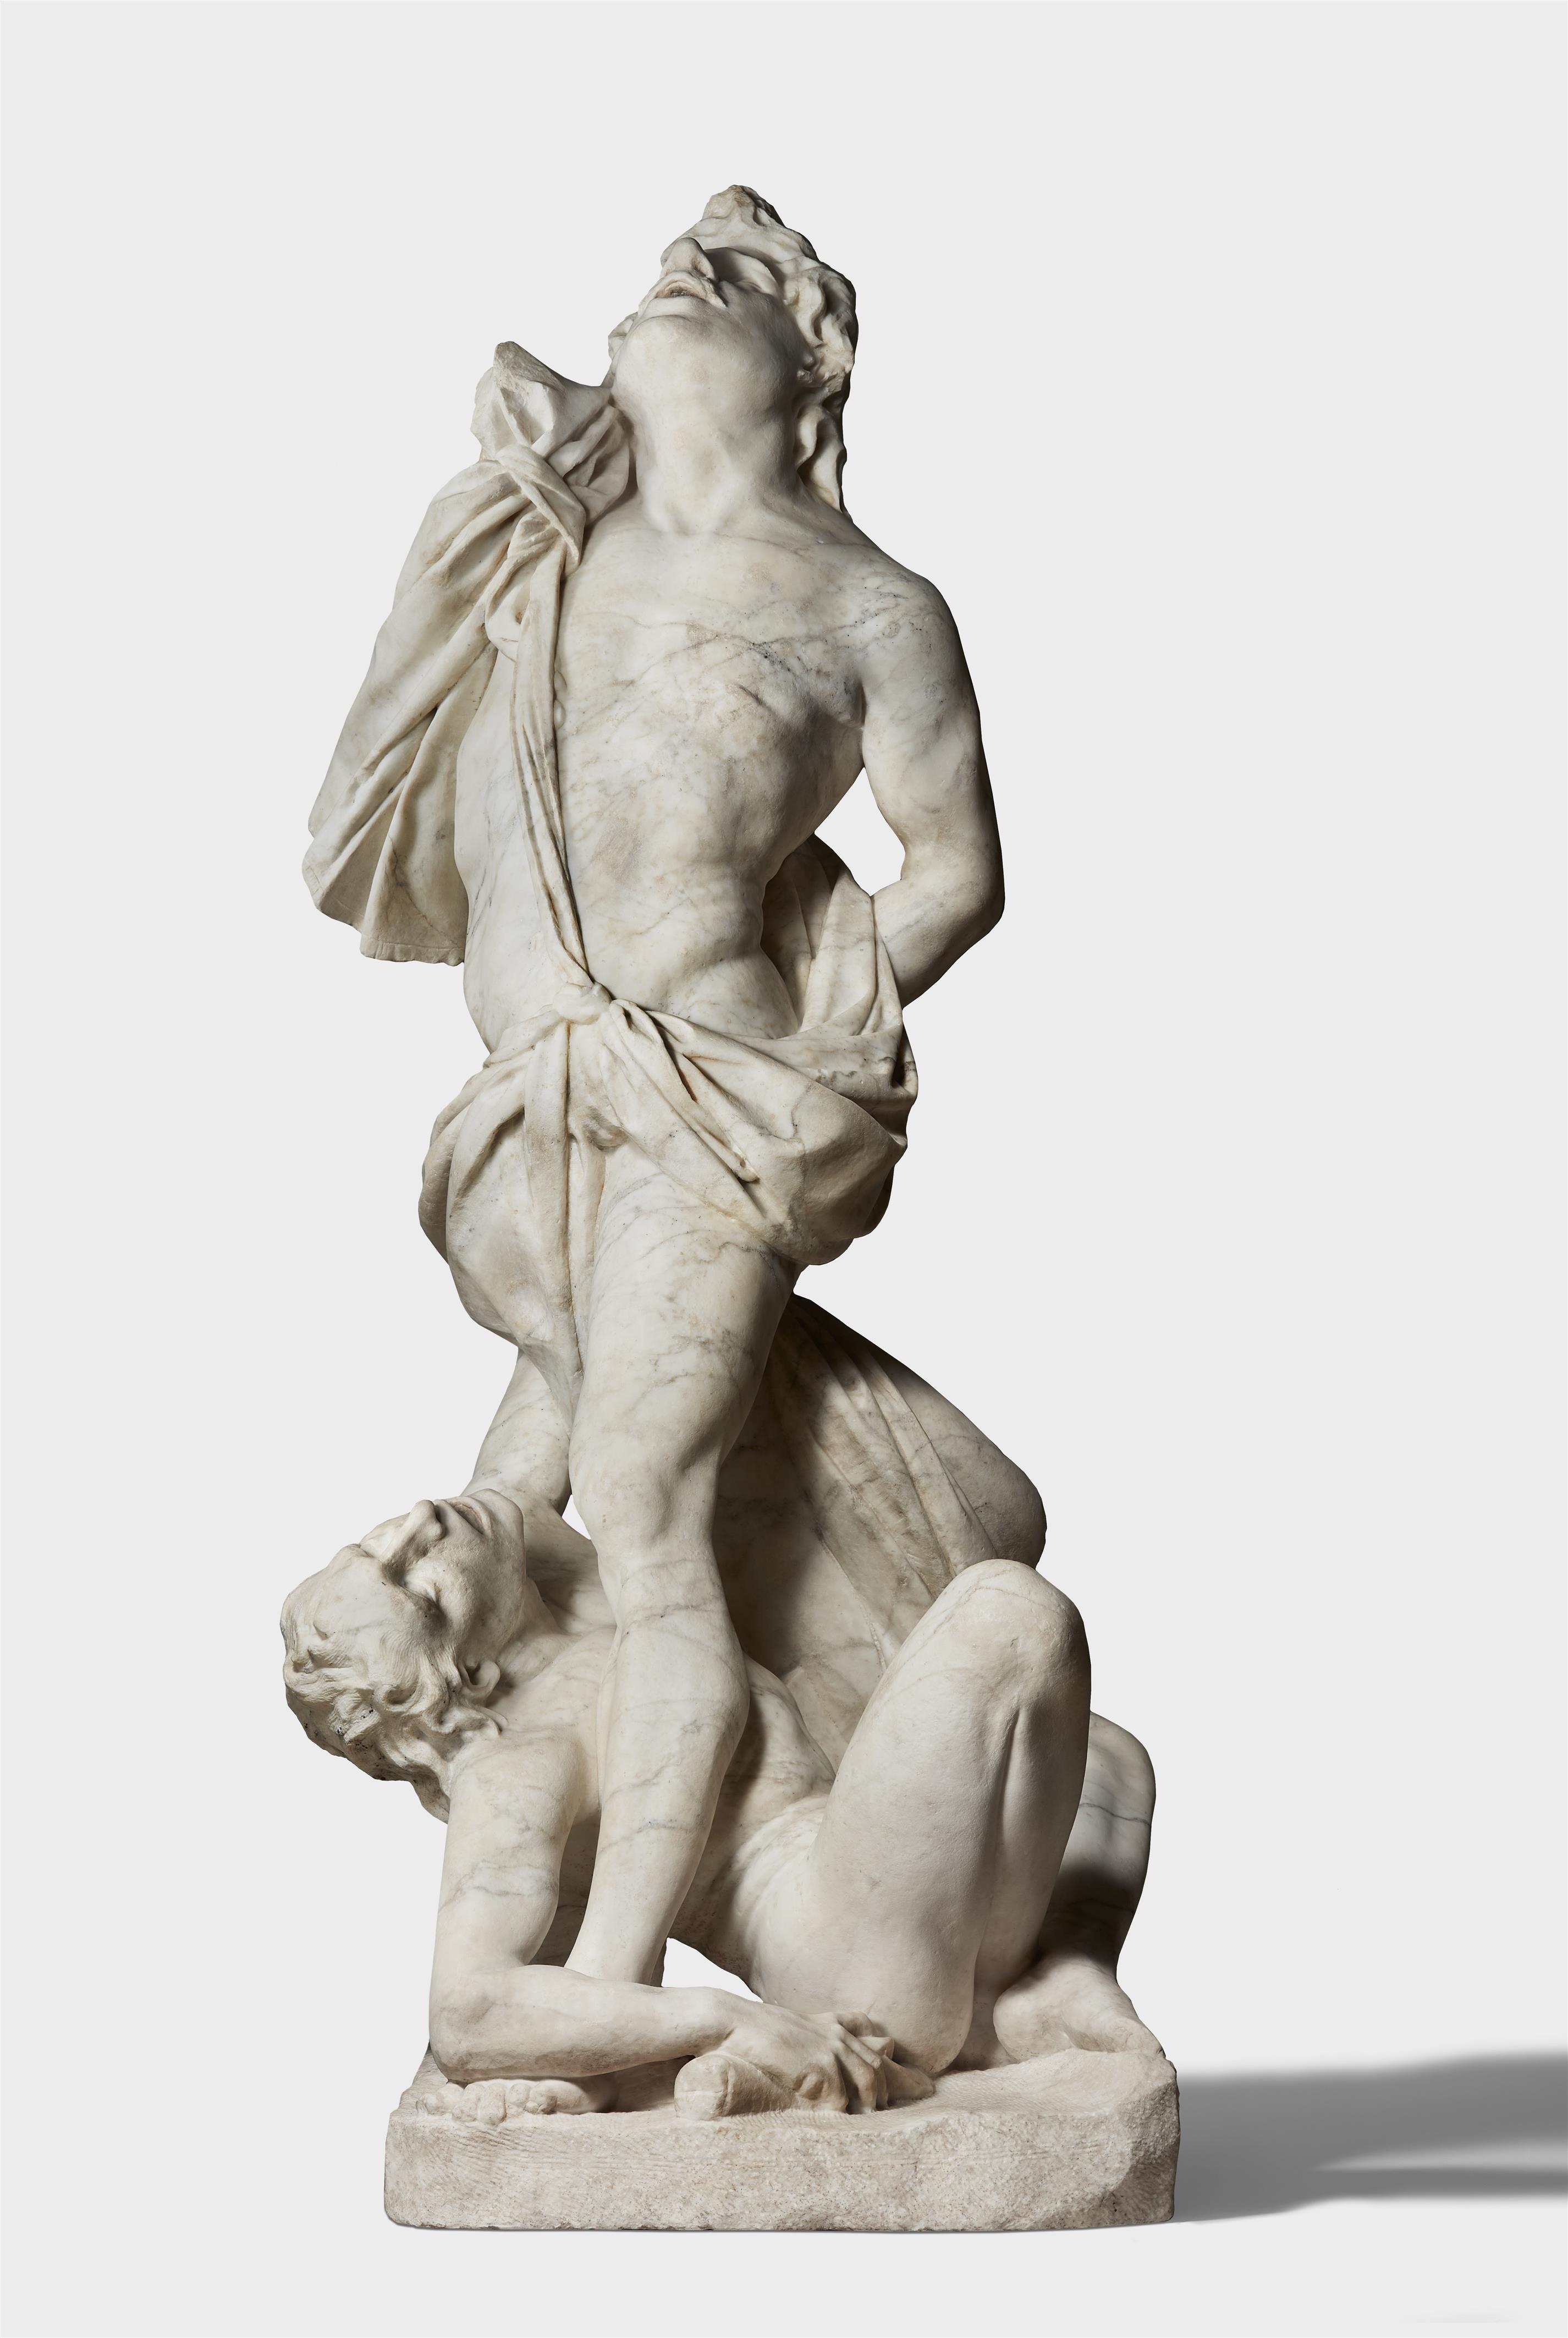 Simson mit einem Philister
von Pietro und Gian Lorenzo Bernini - image-9